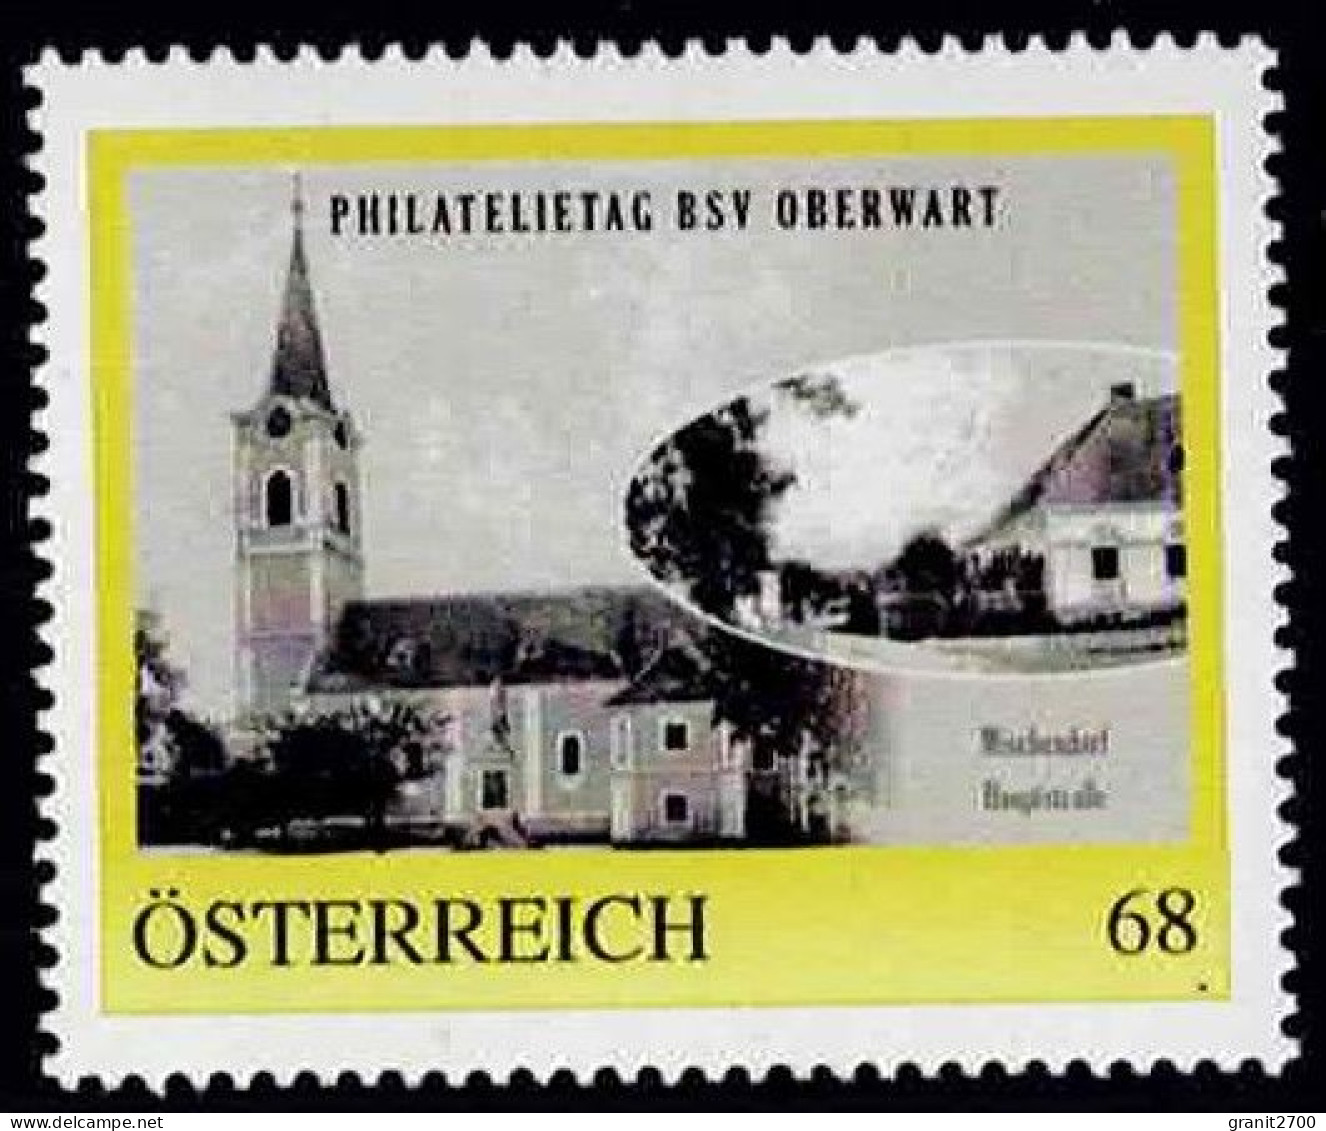 PM  Philatelietag  Oberwart - Mischendorf   Ex Bogen Nr. 8122728 Vom 18.6.2017  Postfrisch - Personalisierte Briefmarken